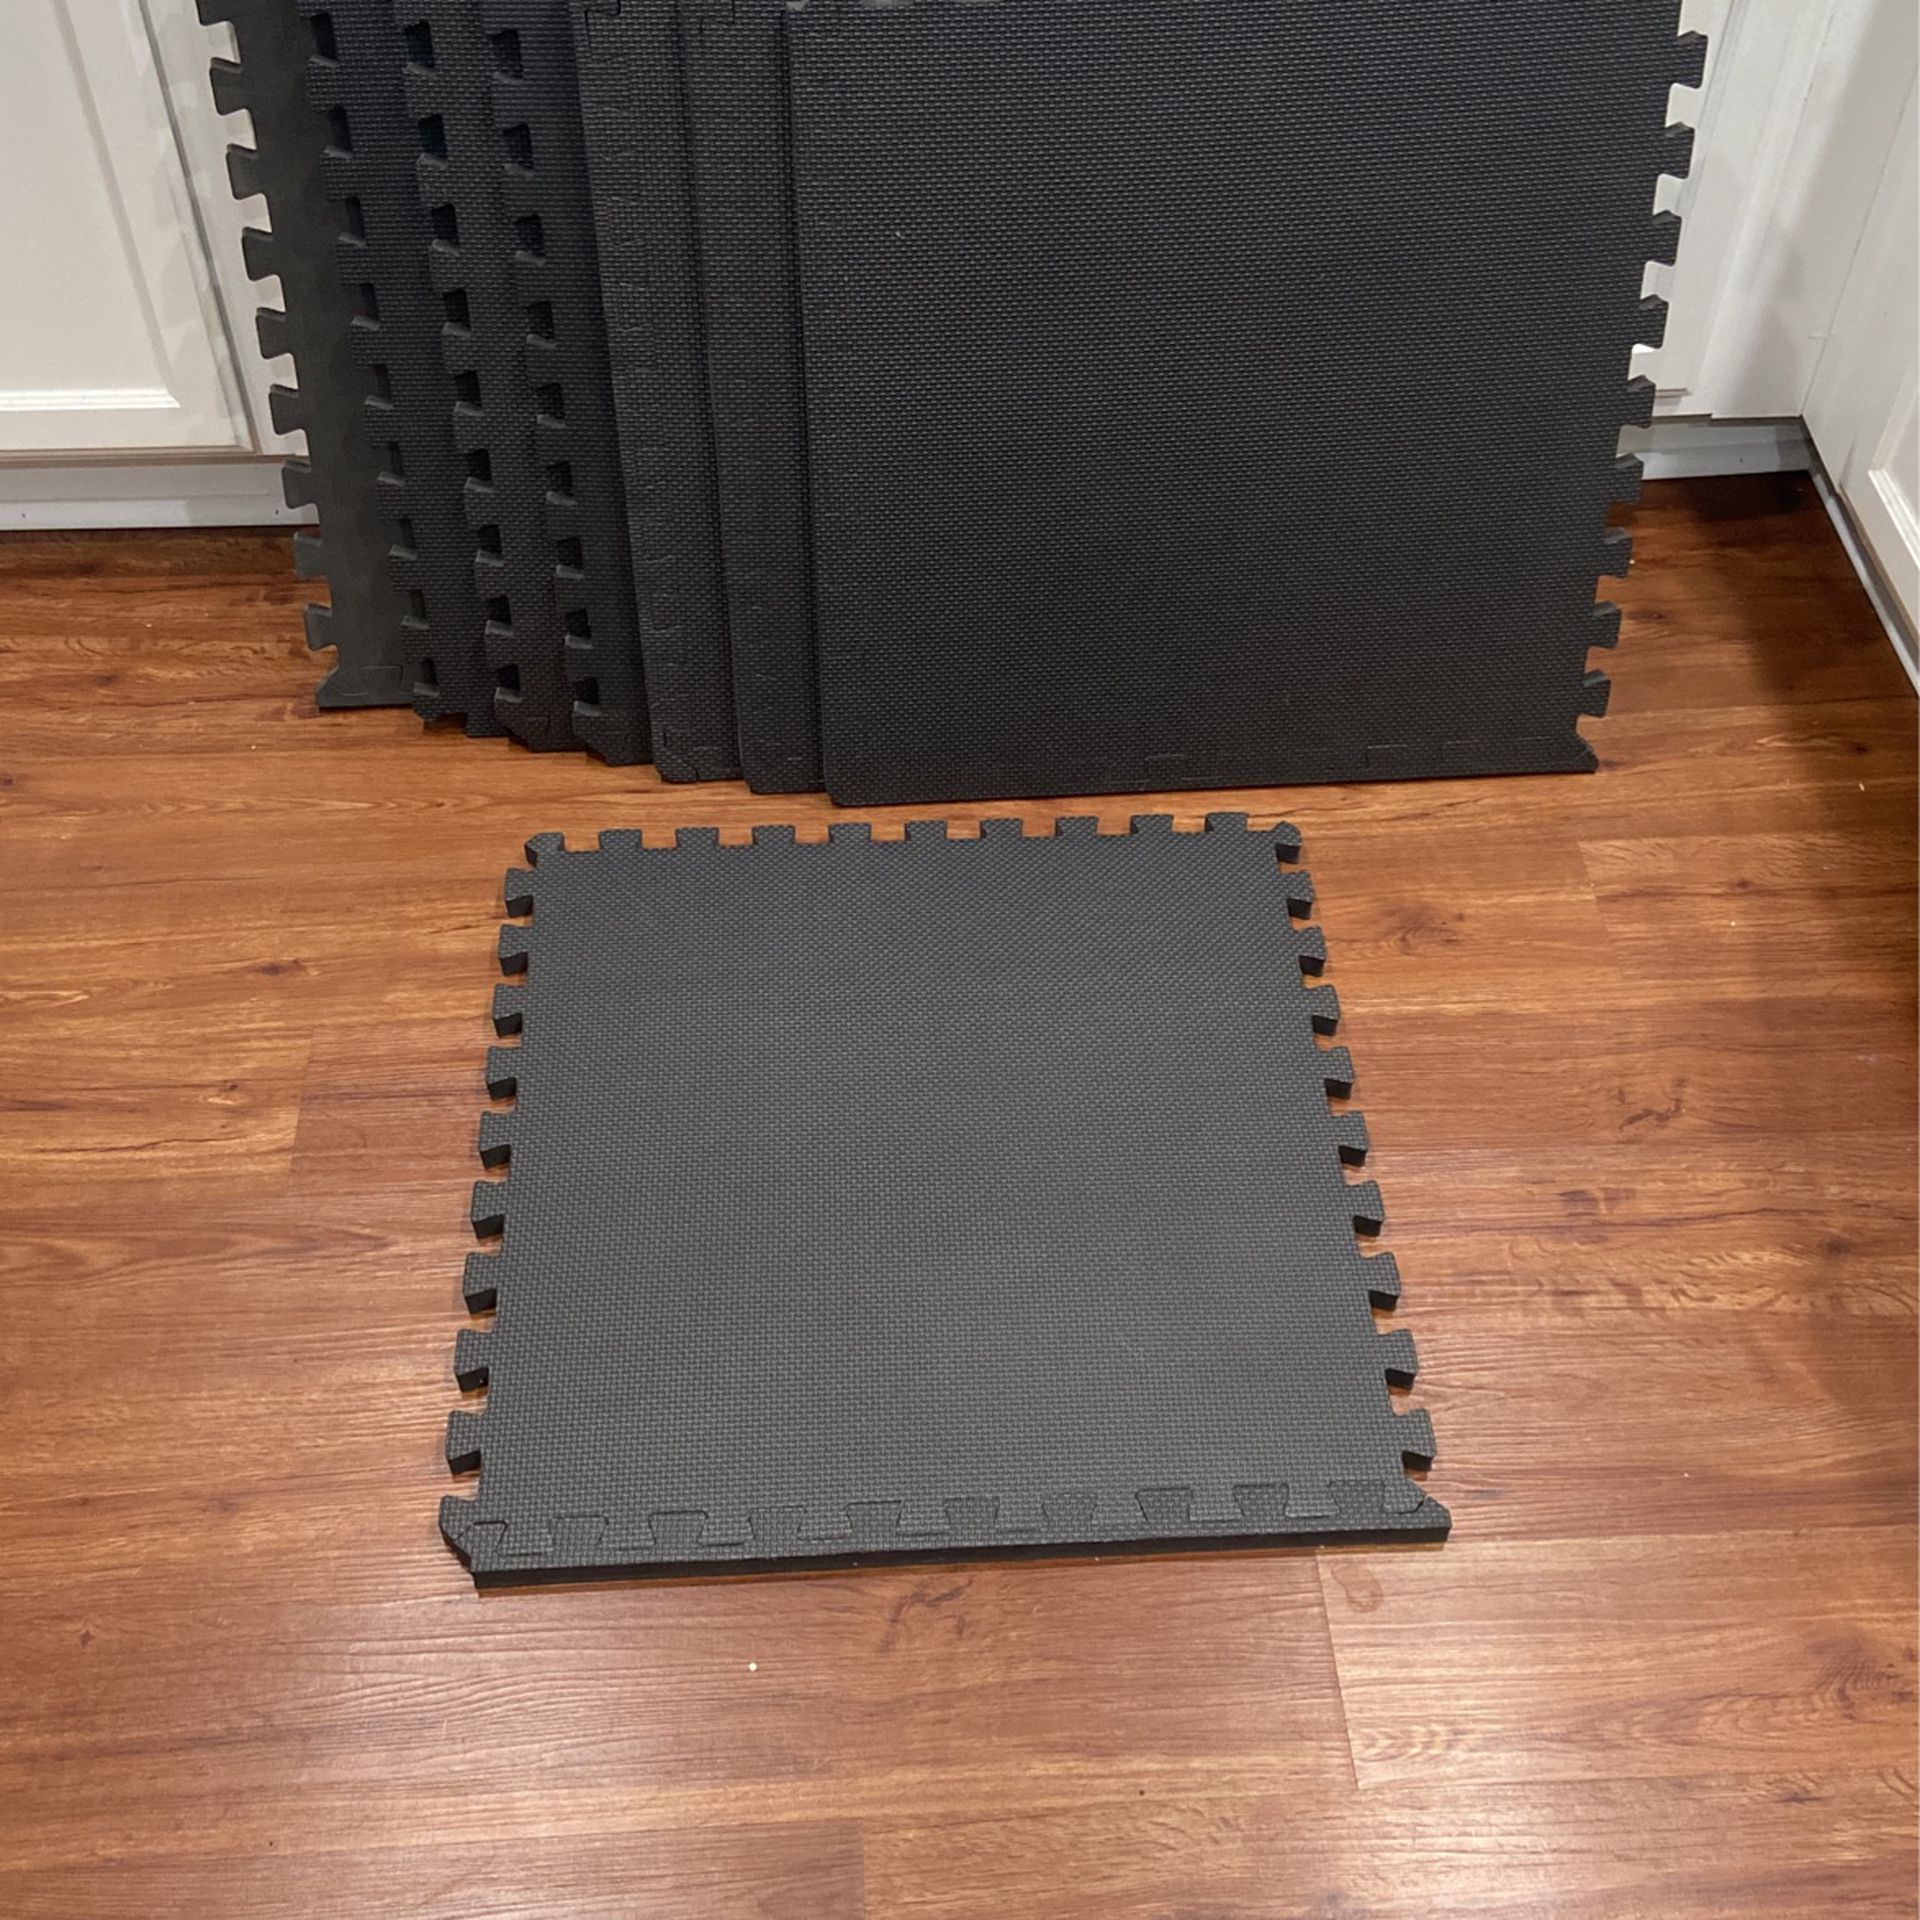 18   24 1/2” X 24 1/2” X 3/4” Rubber Interlocking Floor Tiles. $20.00